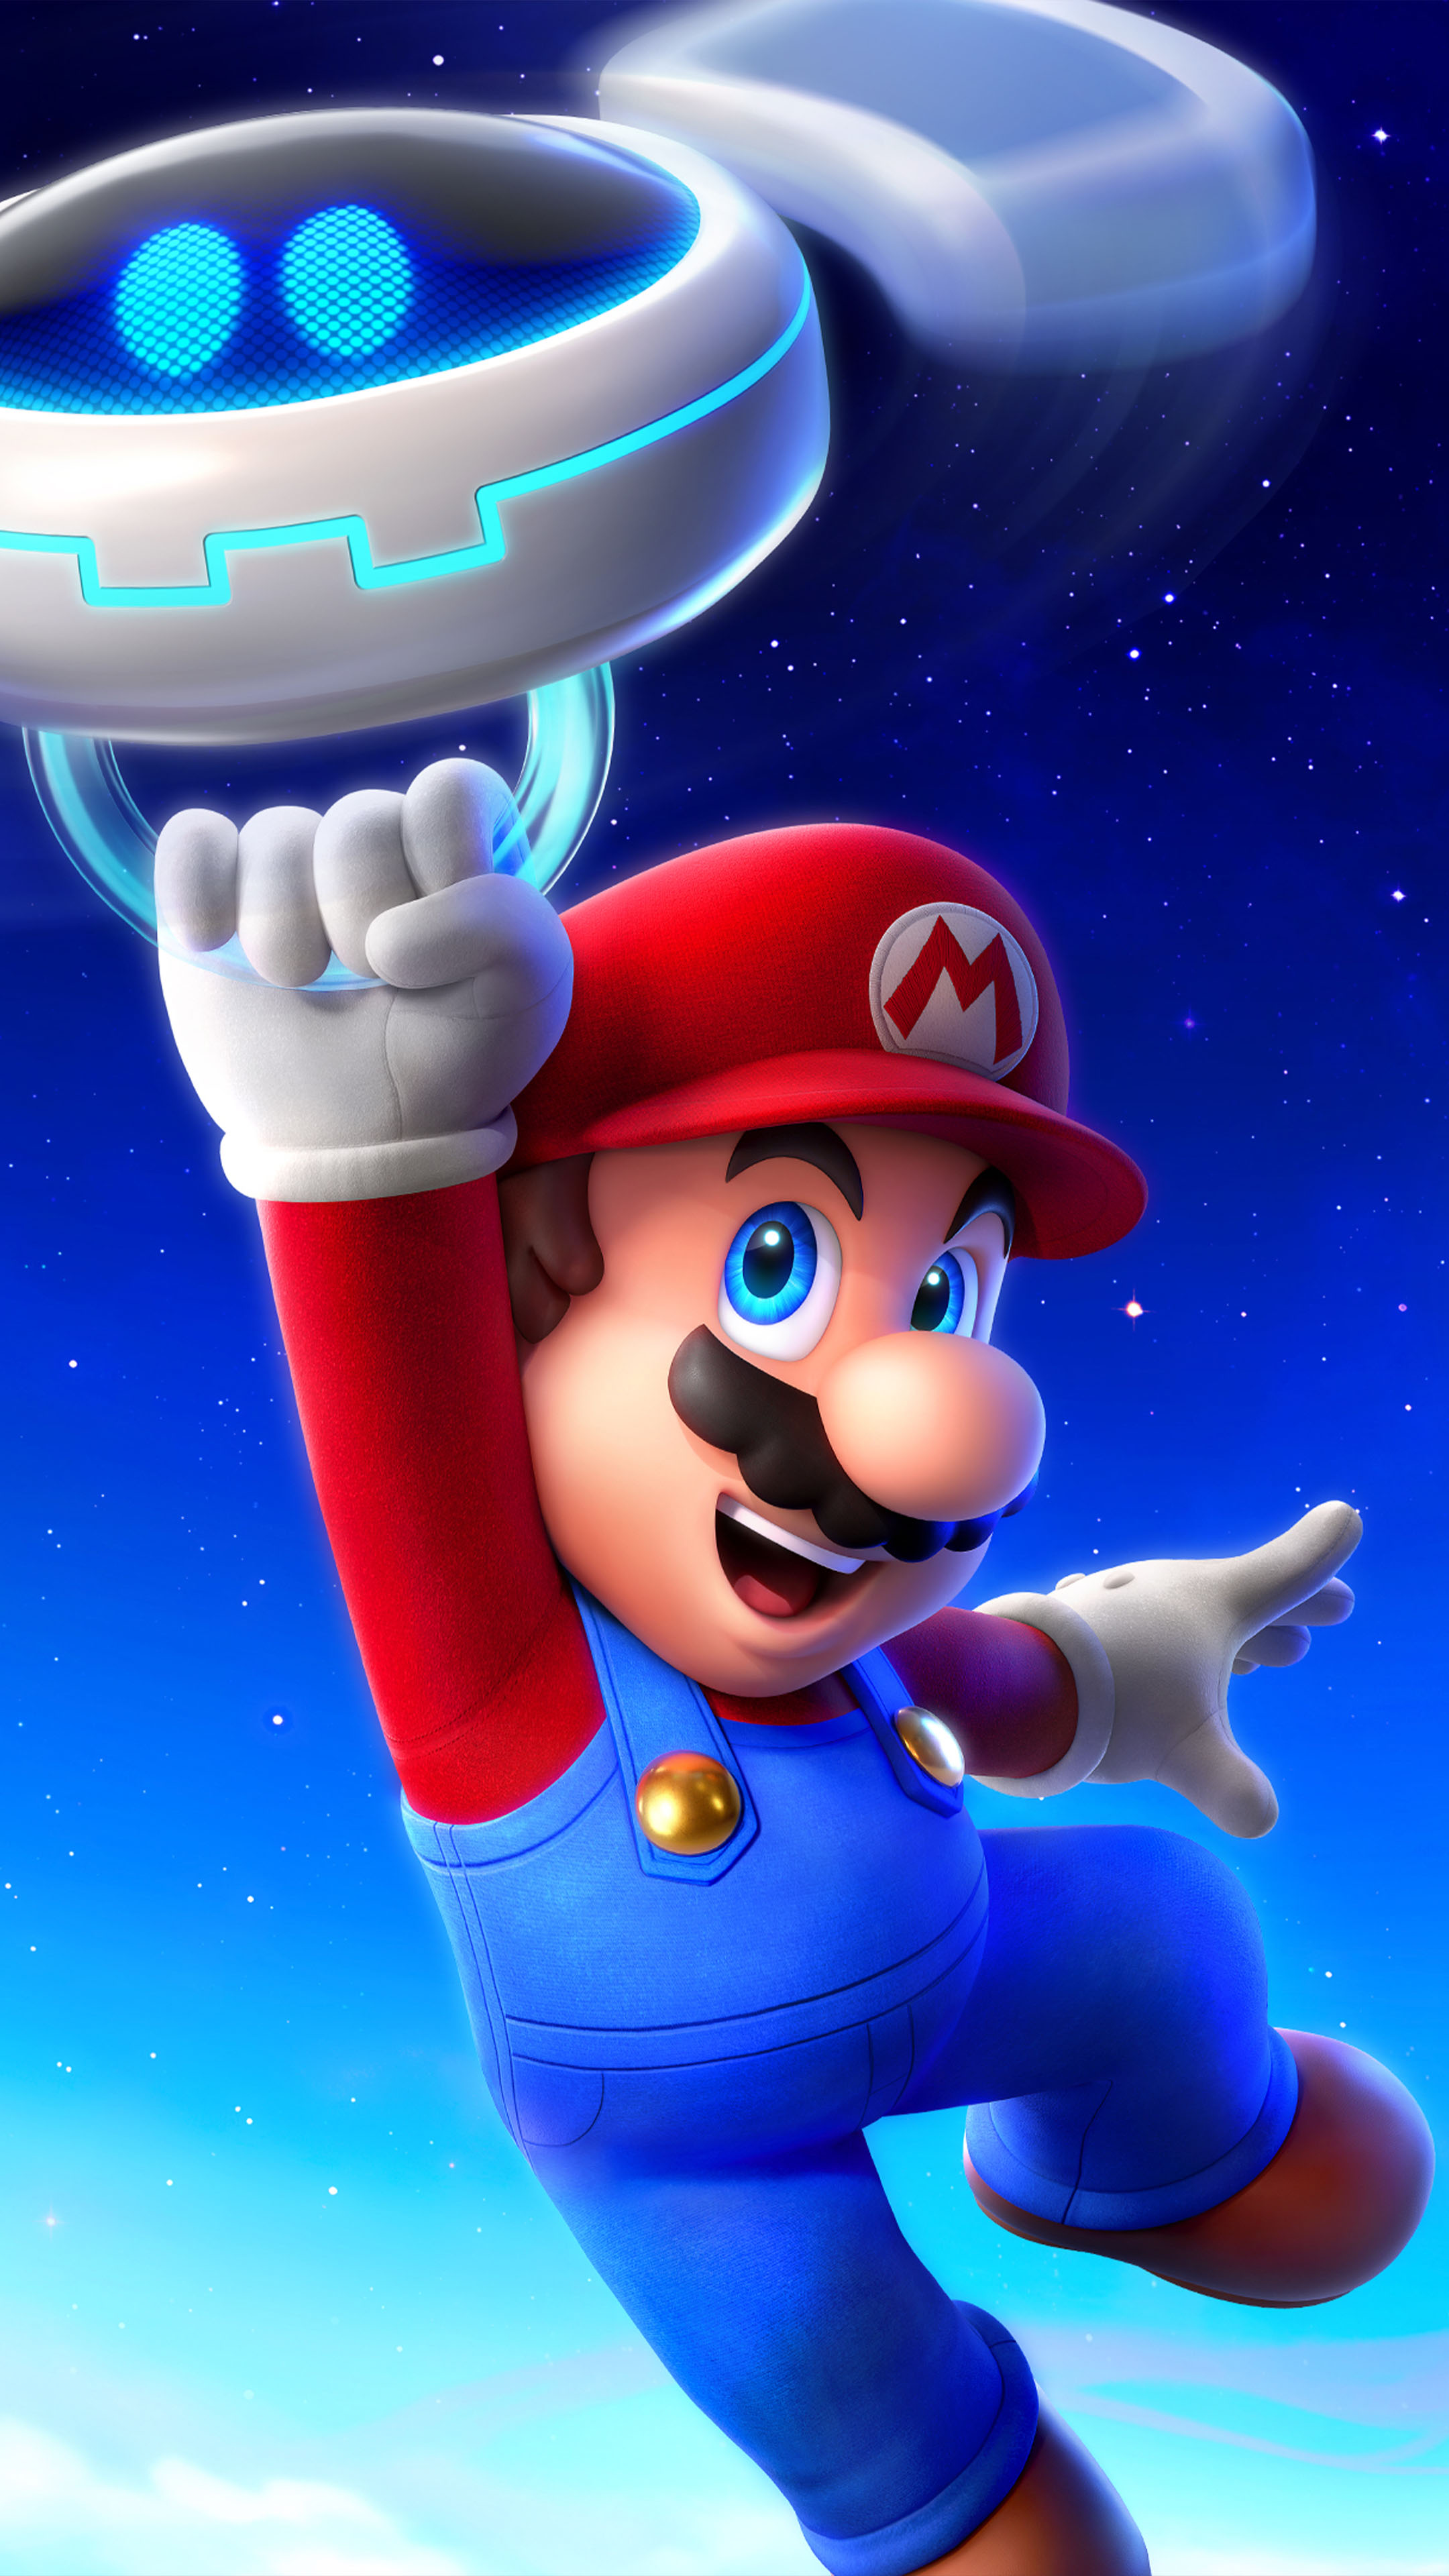 Mario Sparks of Hope hứa hẹn sẽ mang đến cho bạn những bức ảnh chất lượng 4K Ultra HD Mobile Wallpaper tuyệt đẹp nhất. Hãy cùng ngắm nhìn những hình ảnh đầy màu sắc và sinh động của những nhân vật trong trò chơi lừng danh này. Chắc chắn bạn sẽ không thể rời mắt khỏi điện thoại của mình!